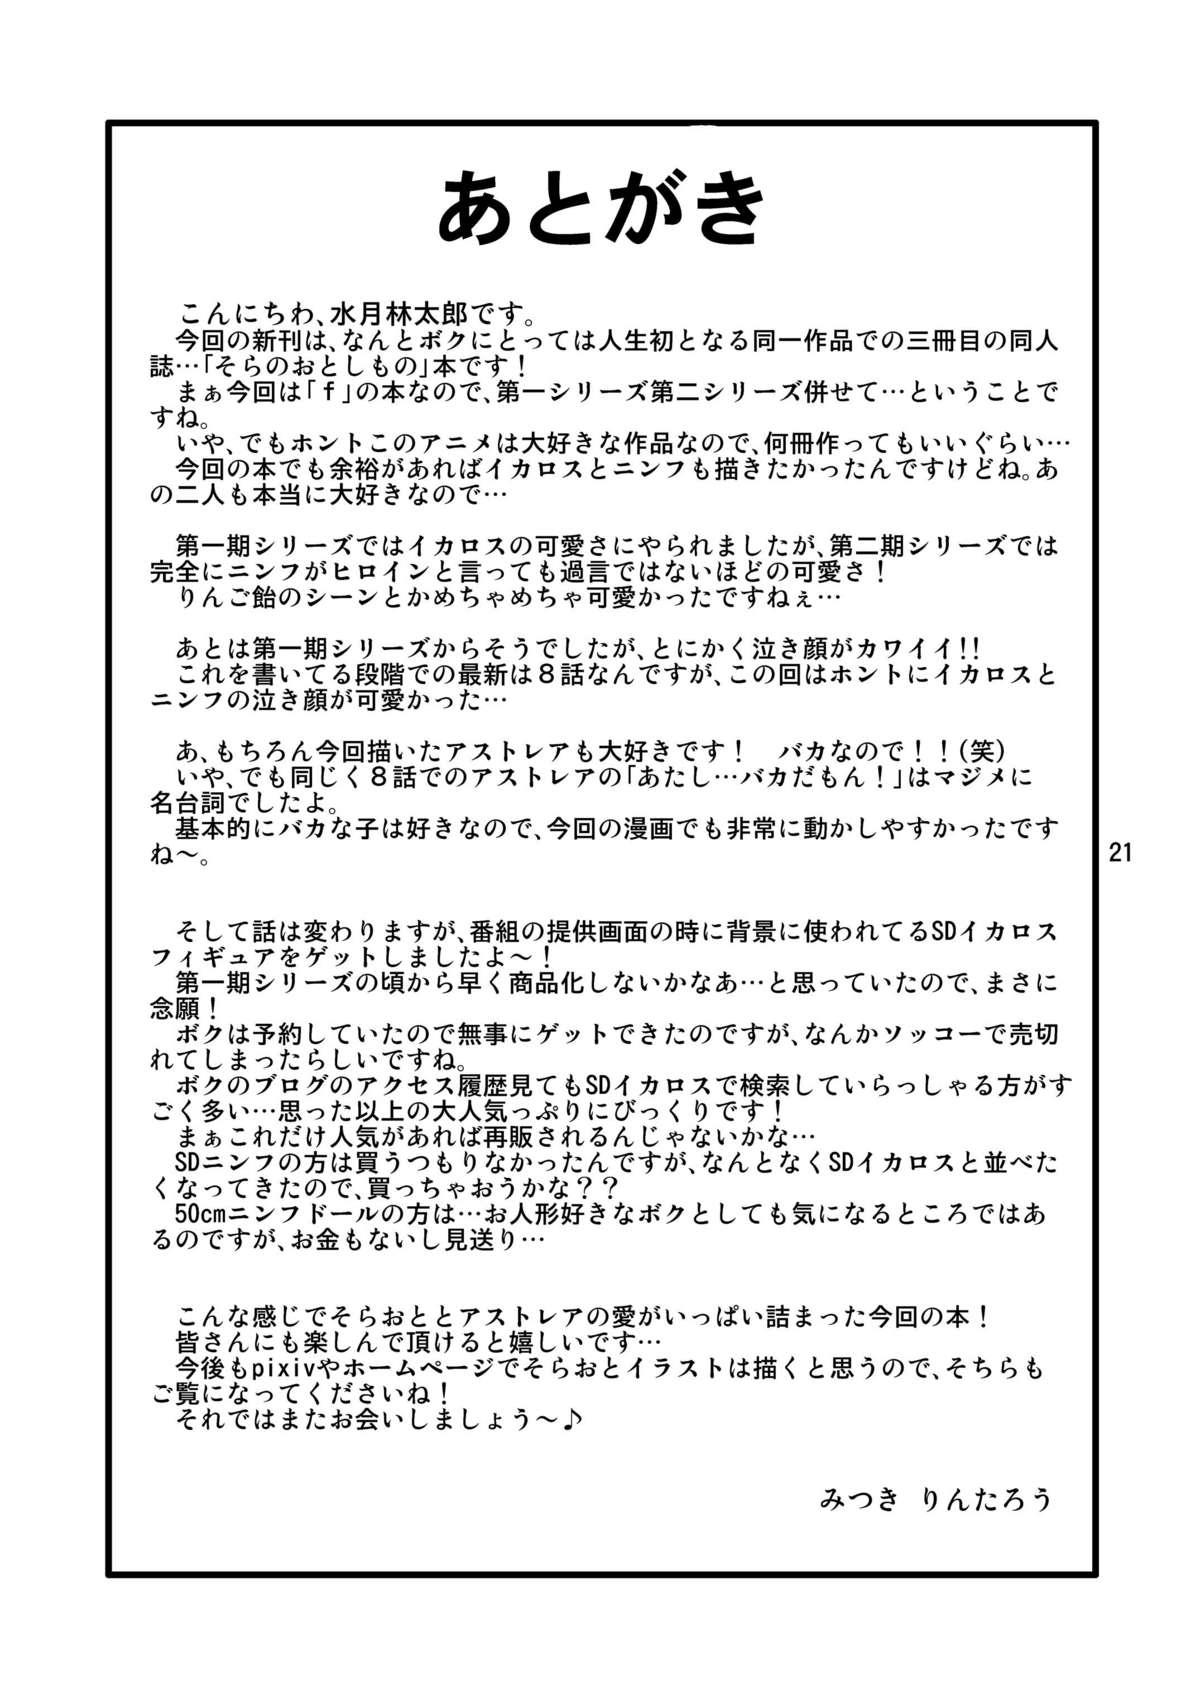 Classroom Oshiri no Tanima ni Insert!! - Sora no otoshimono Young Old - Page 21